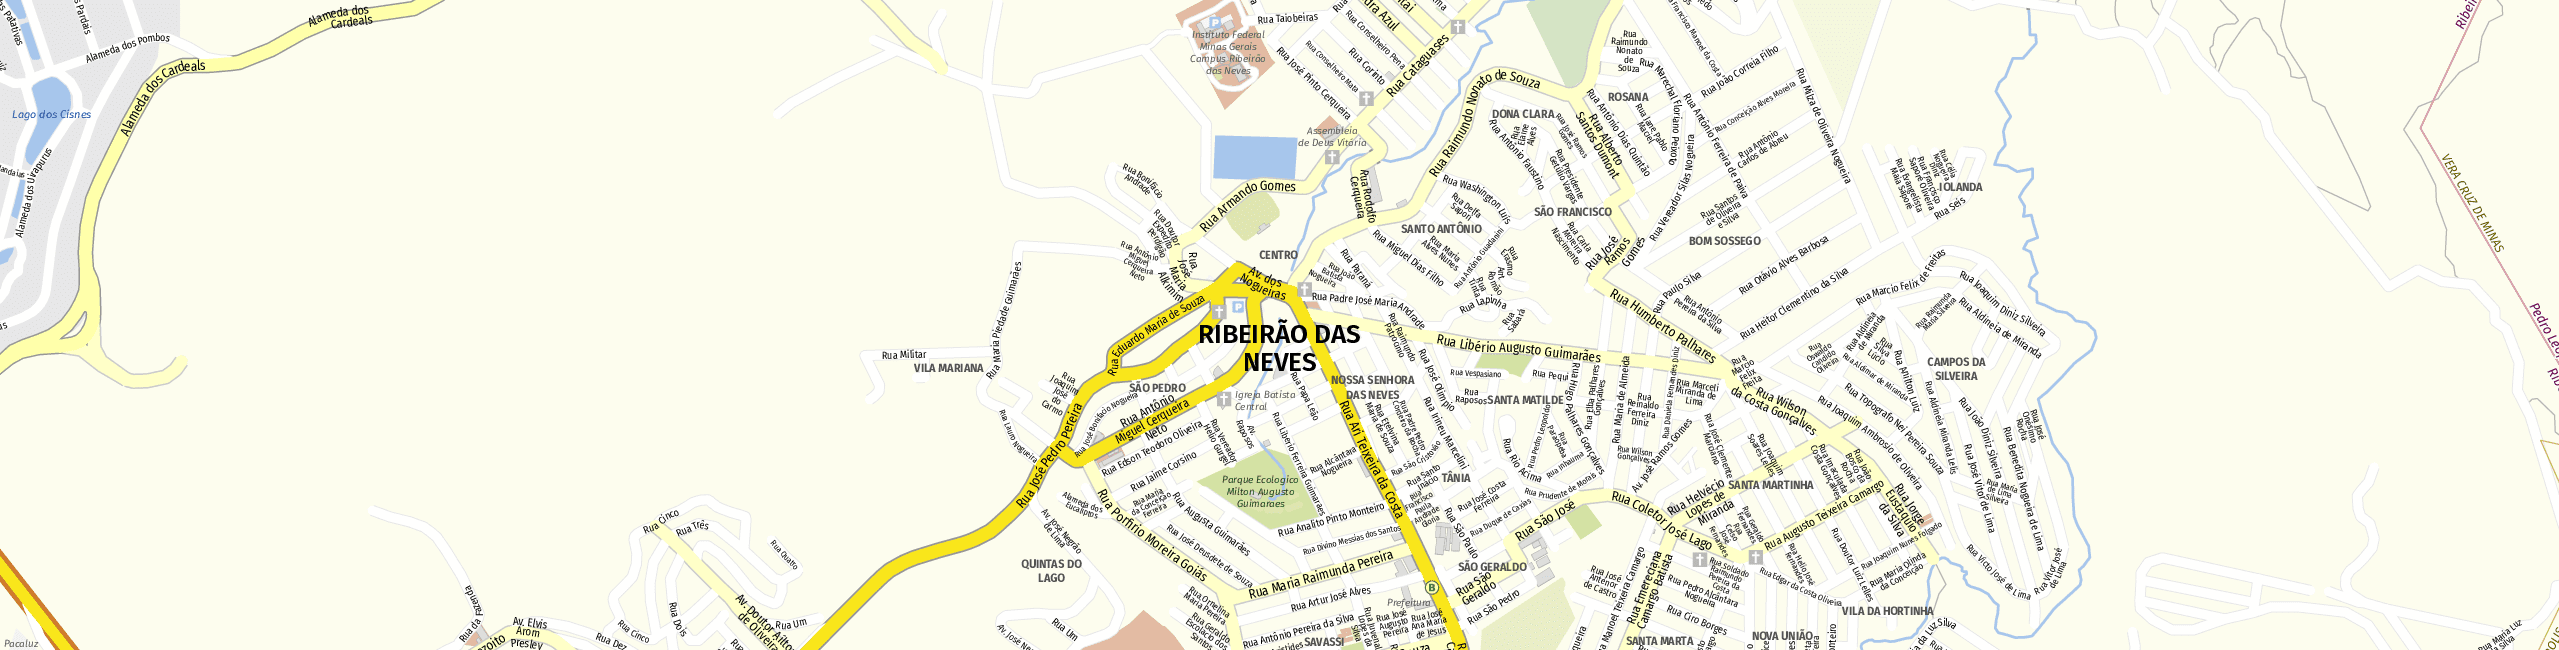 Stadtplan Ribeirão das Neves zum Downloaden.